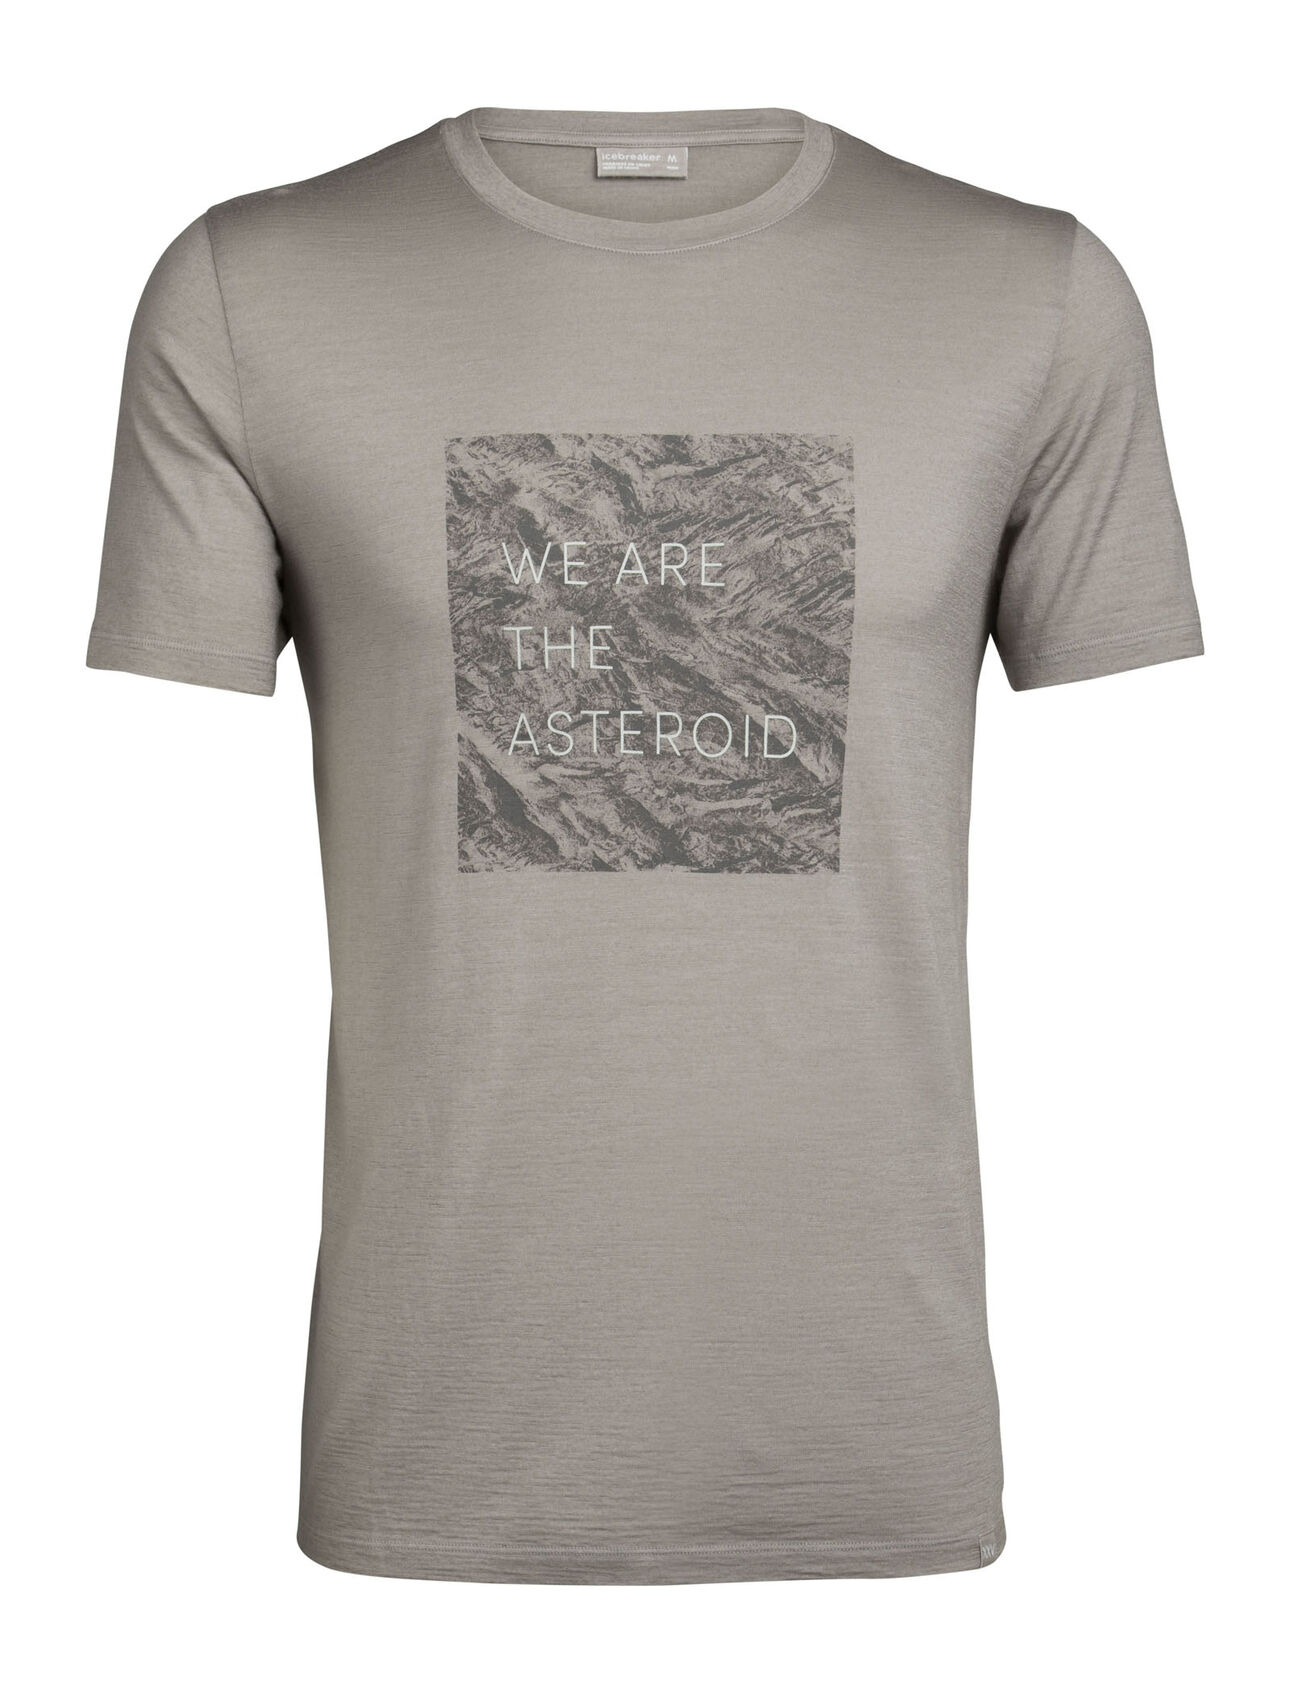 Herr Nature Dye 200 kortärmad t-shirt Asteroid English med rund halsringning Nature Dye 200 kortärmad t-shirt Asteroid English med rund halsringning är en del av vår konstnärsserie i begränsad upplaga. Den kommer med ett exklusivt konstverk och har färgats med naturliga växtpigment. 